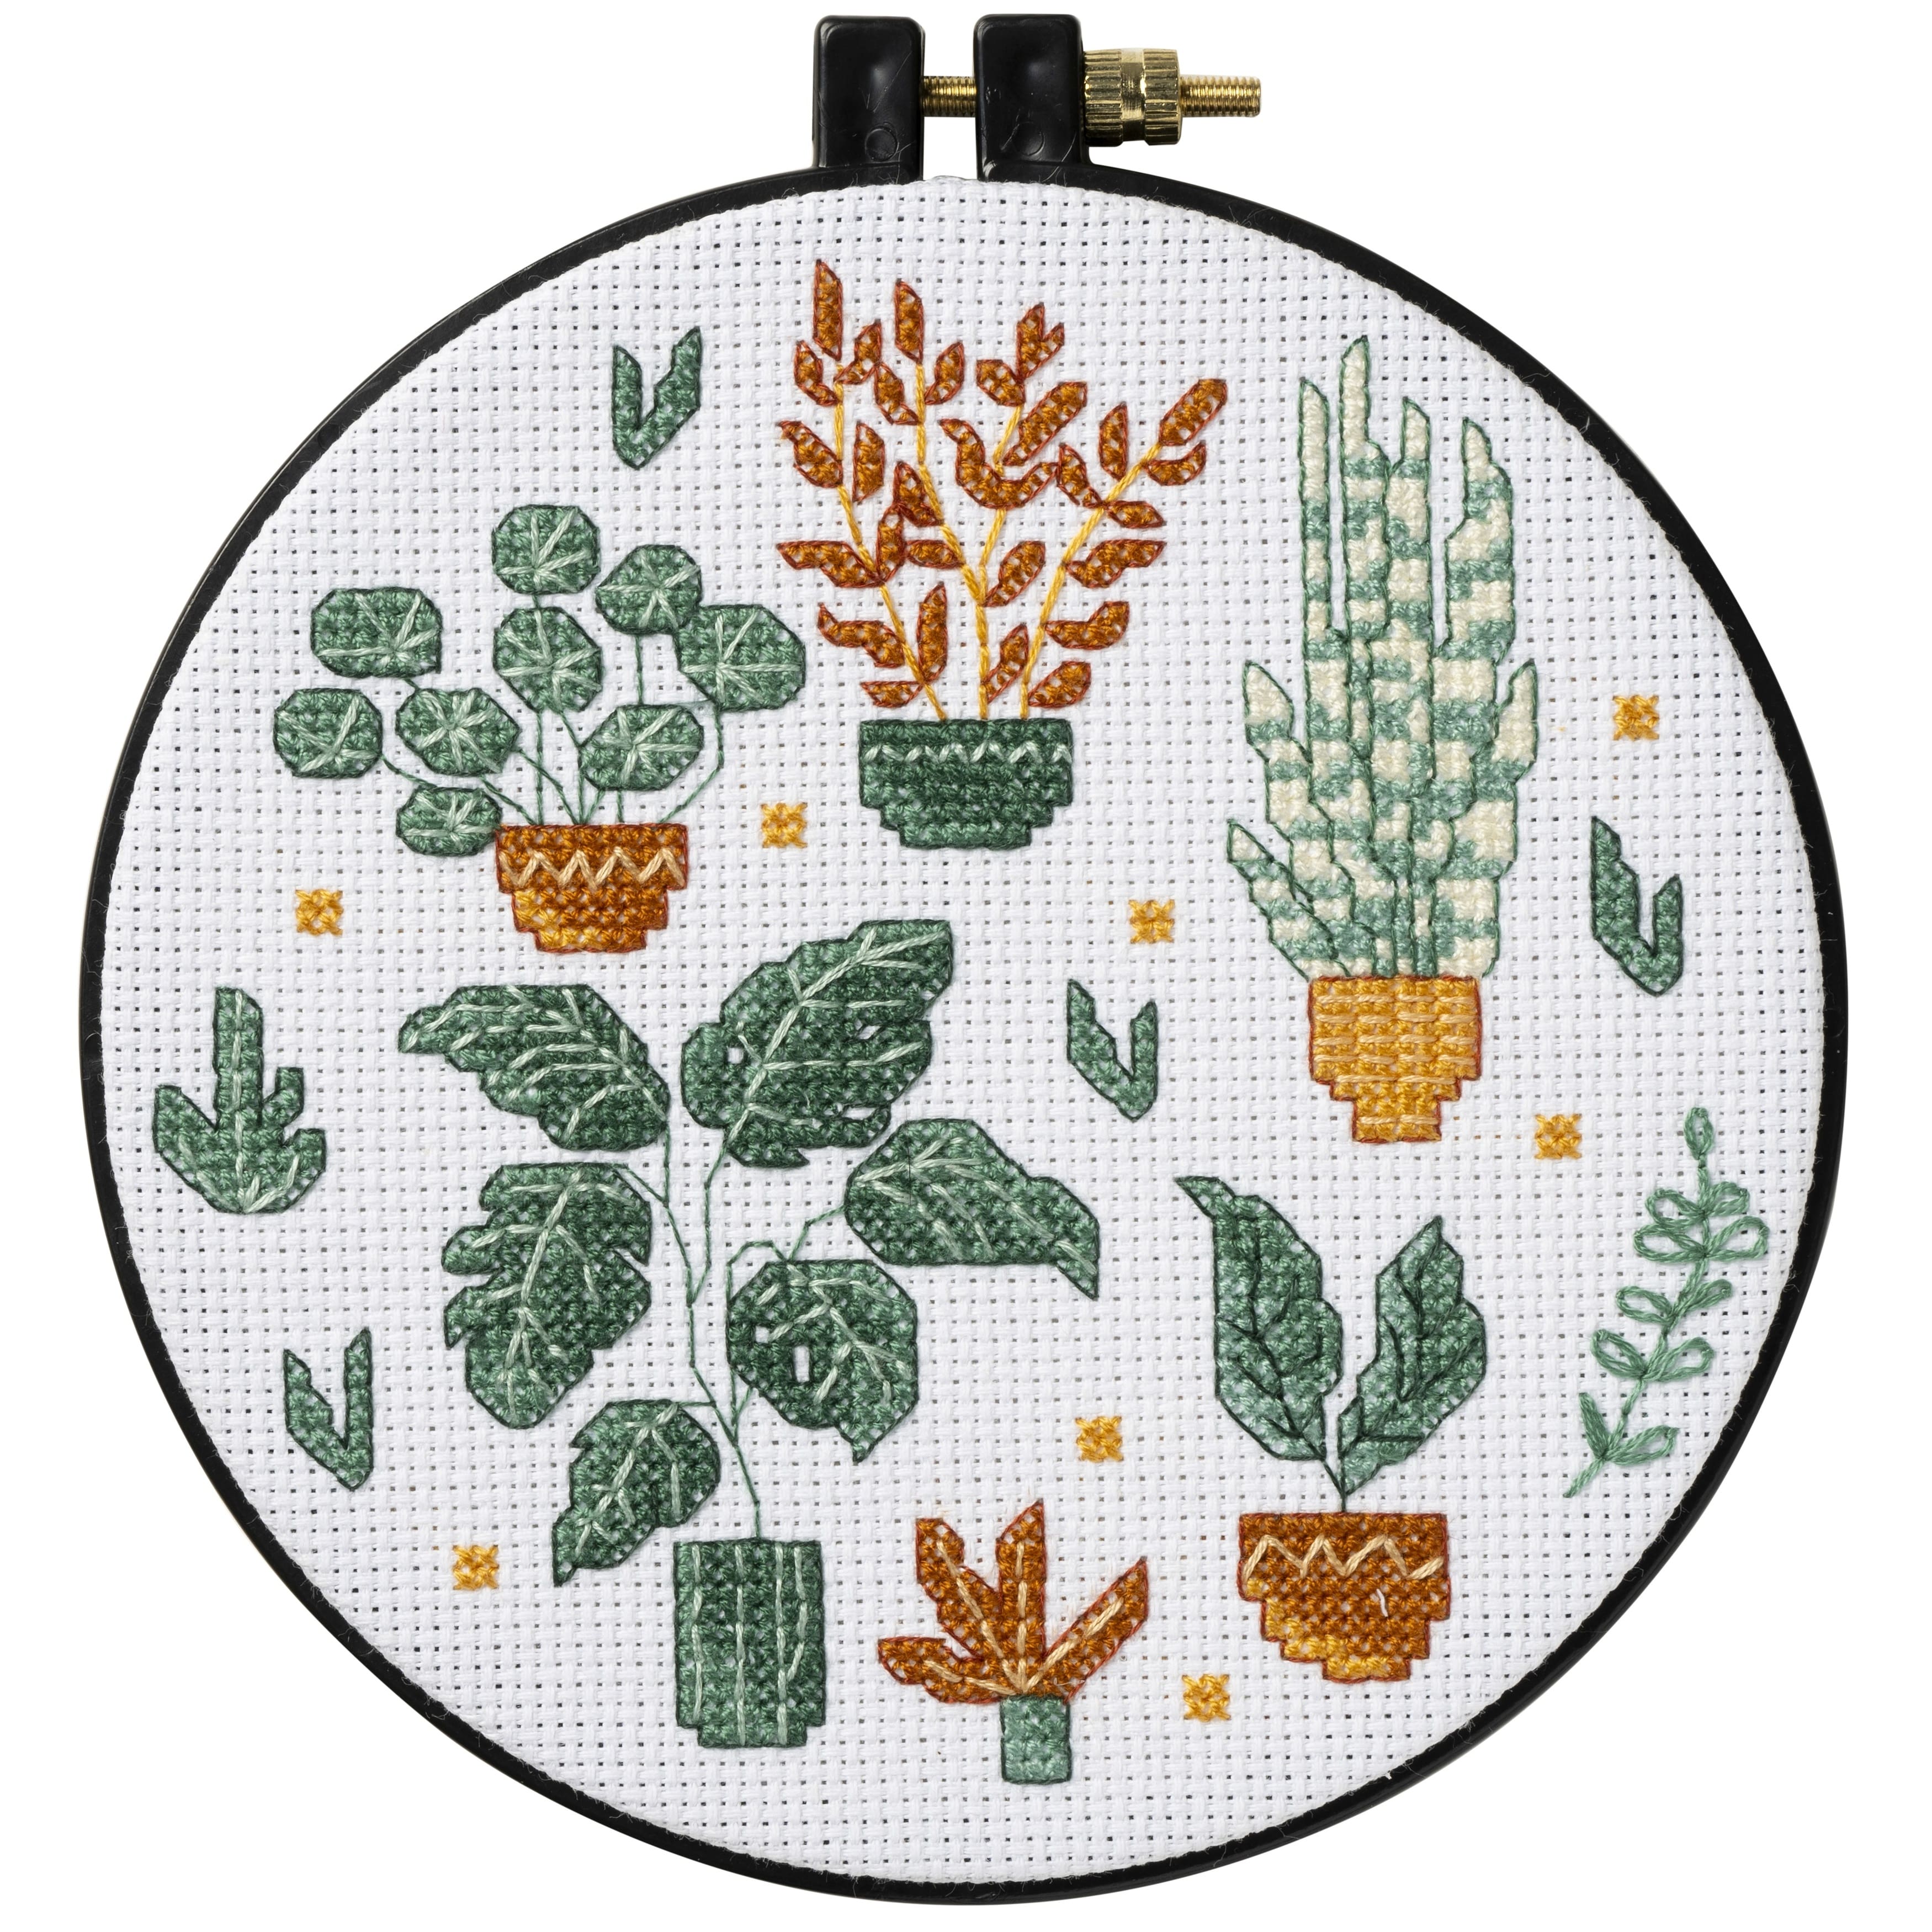 Botany Cross Stitch Kit